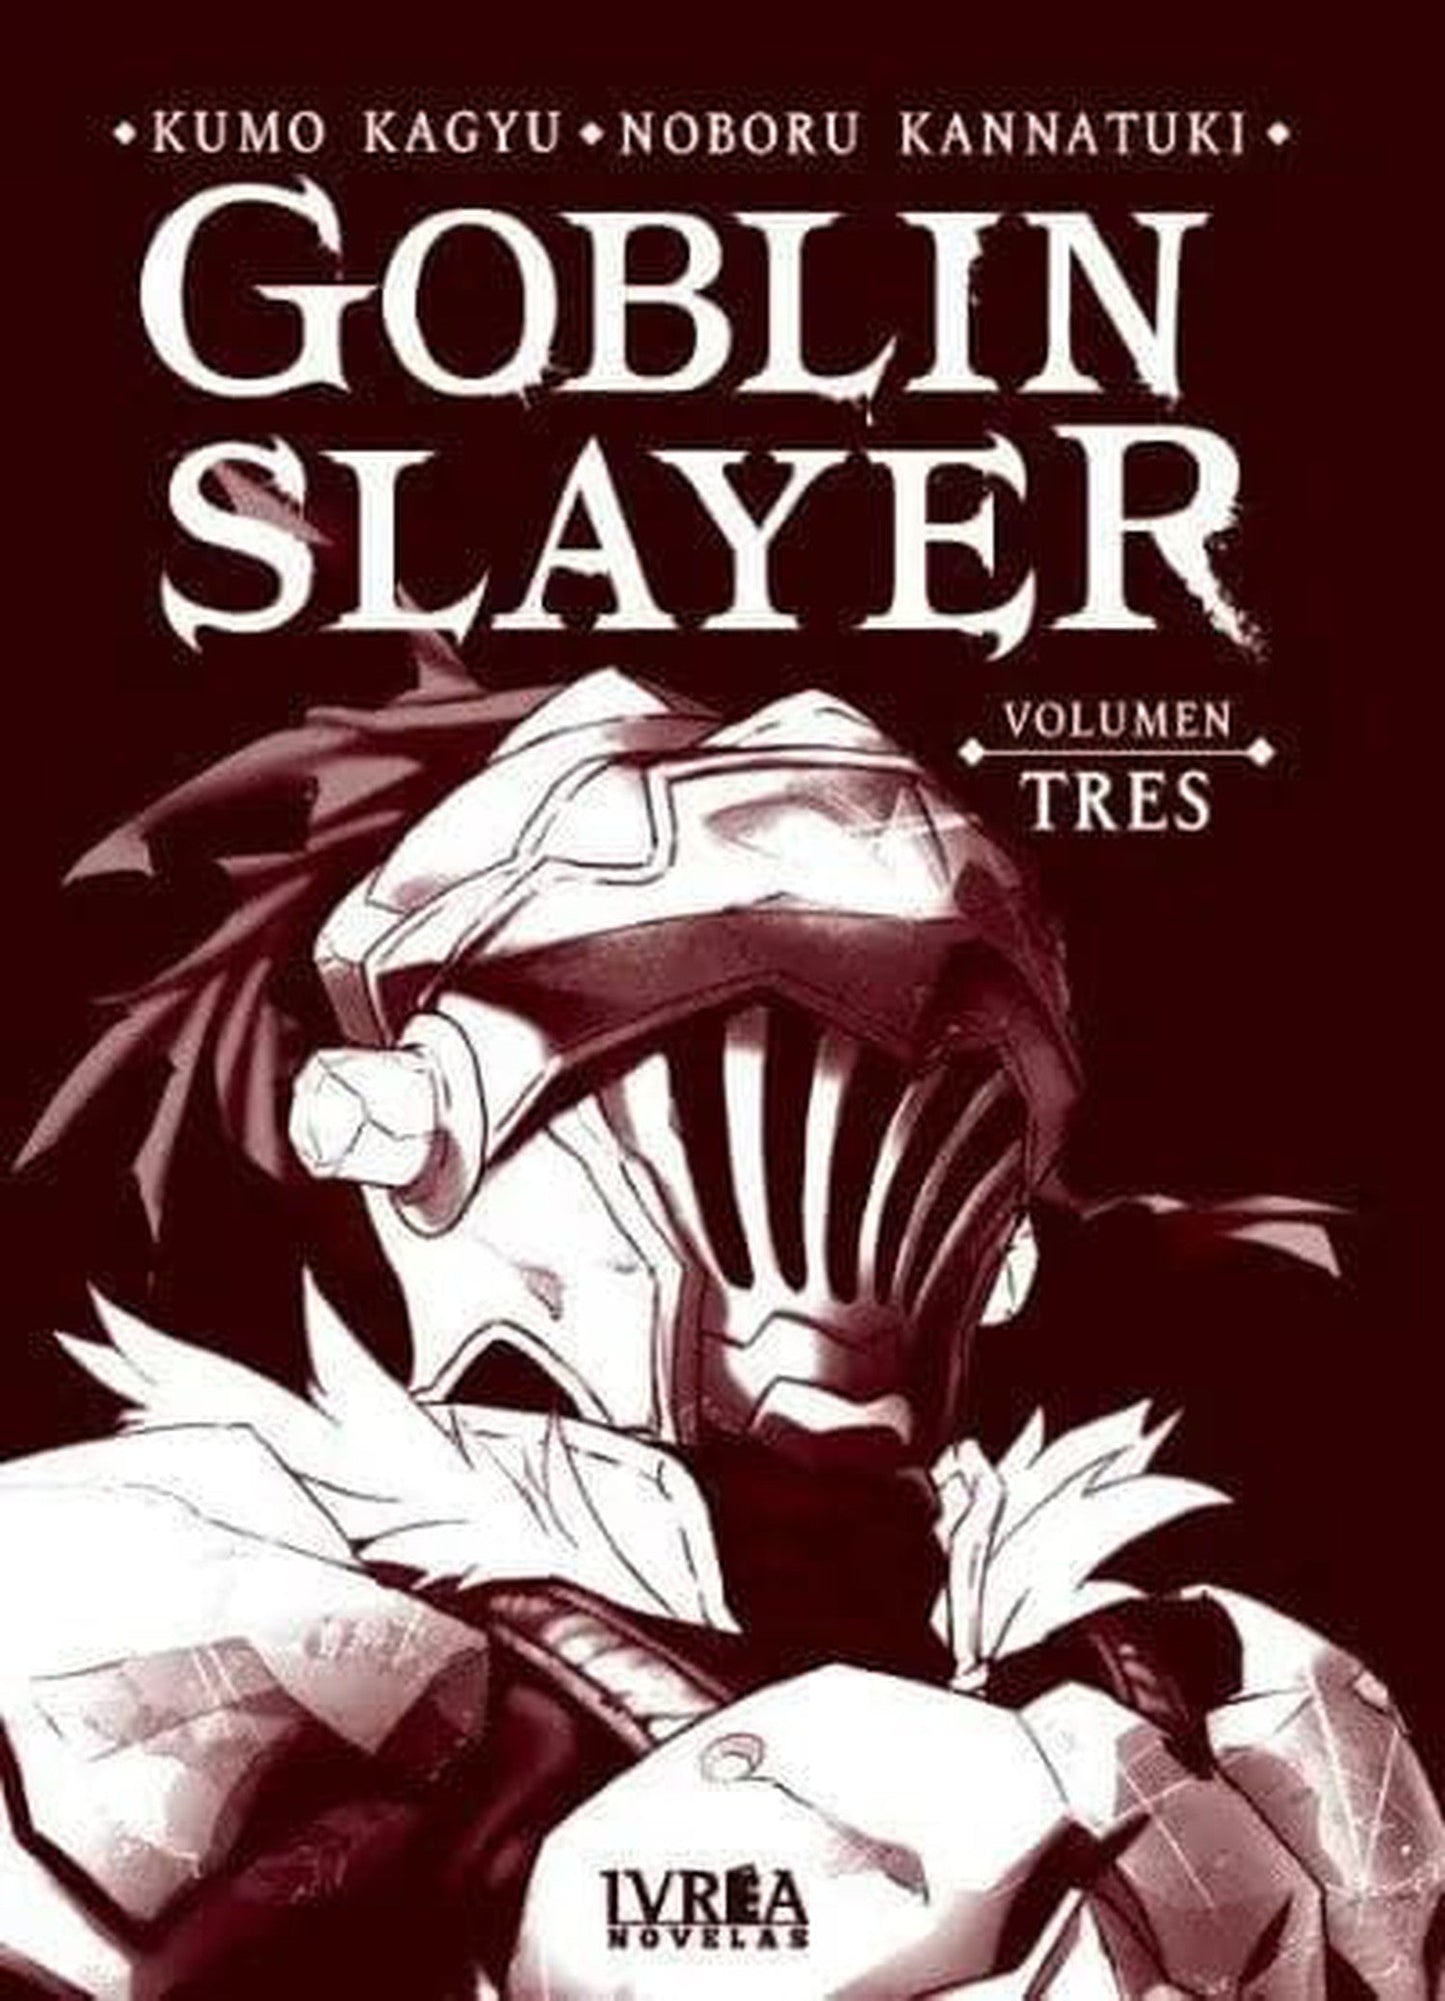 GOBLIN SLAYER: NOVELA TRES